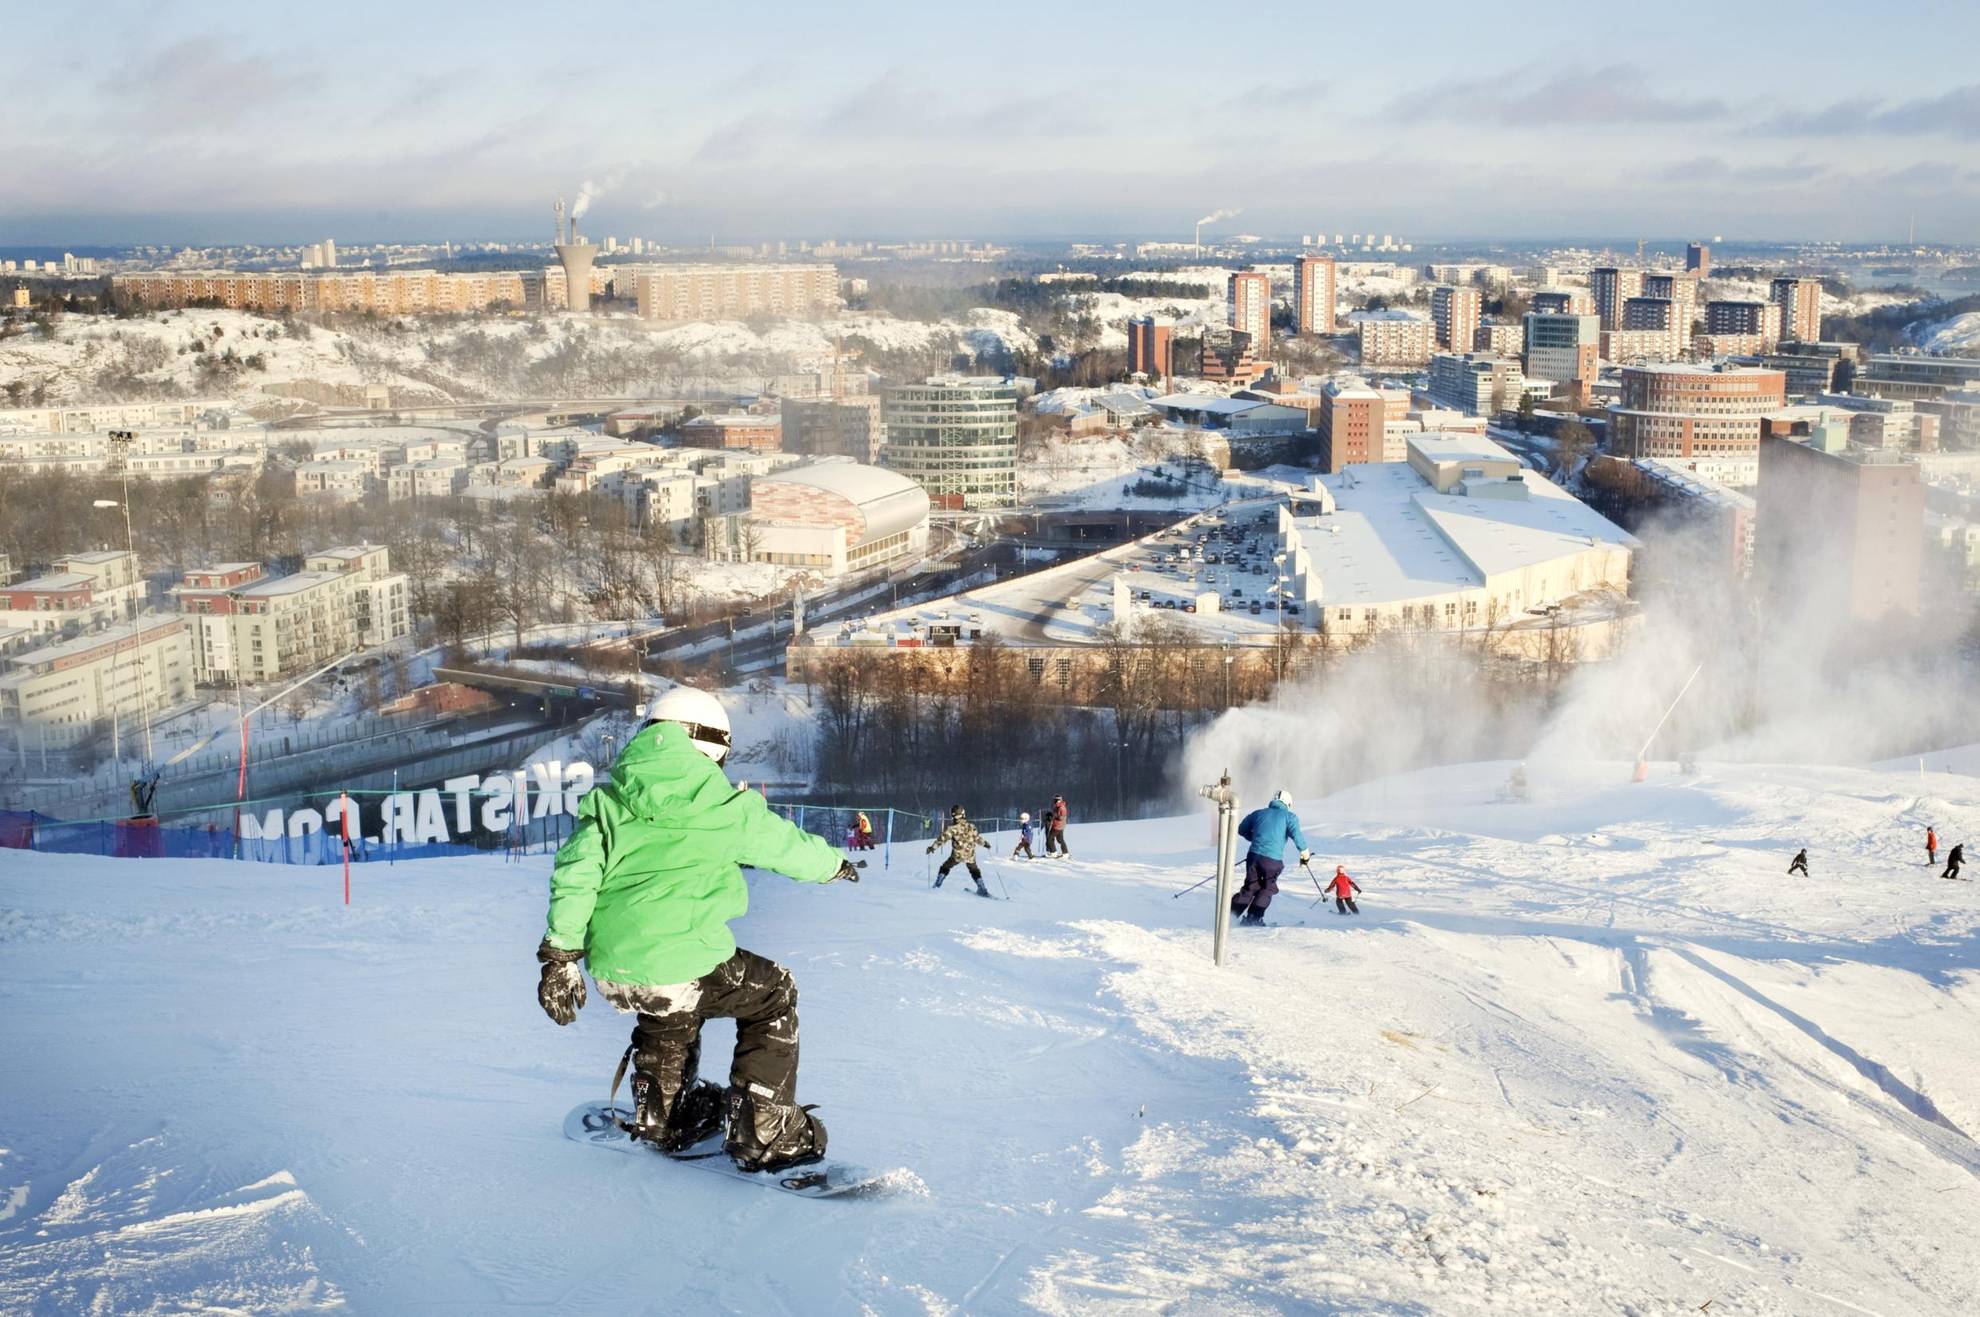 Leute fahren auf Skiern und Snowboards die Pisten von Hammarbybacken hinunter und blicken über die Innenstadt von Stockholm.